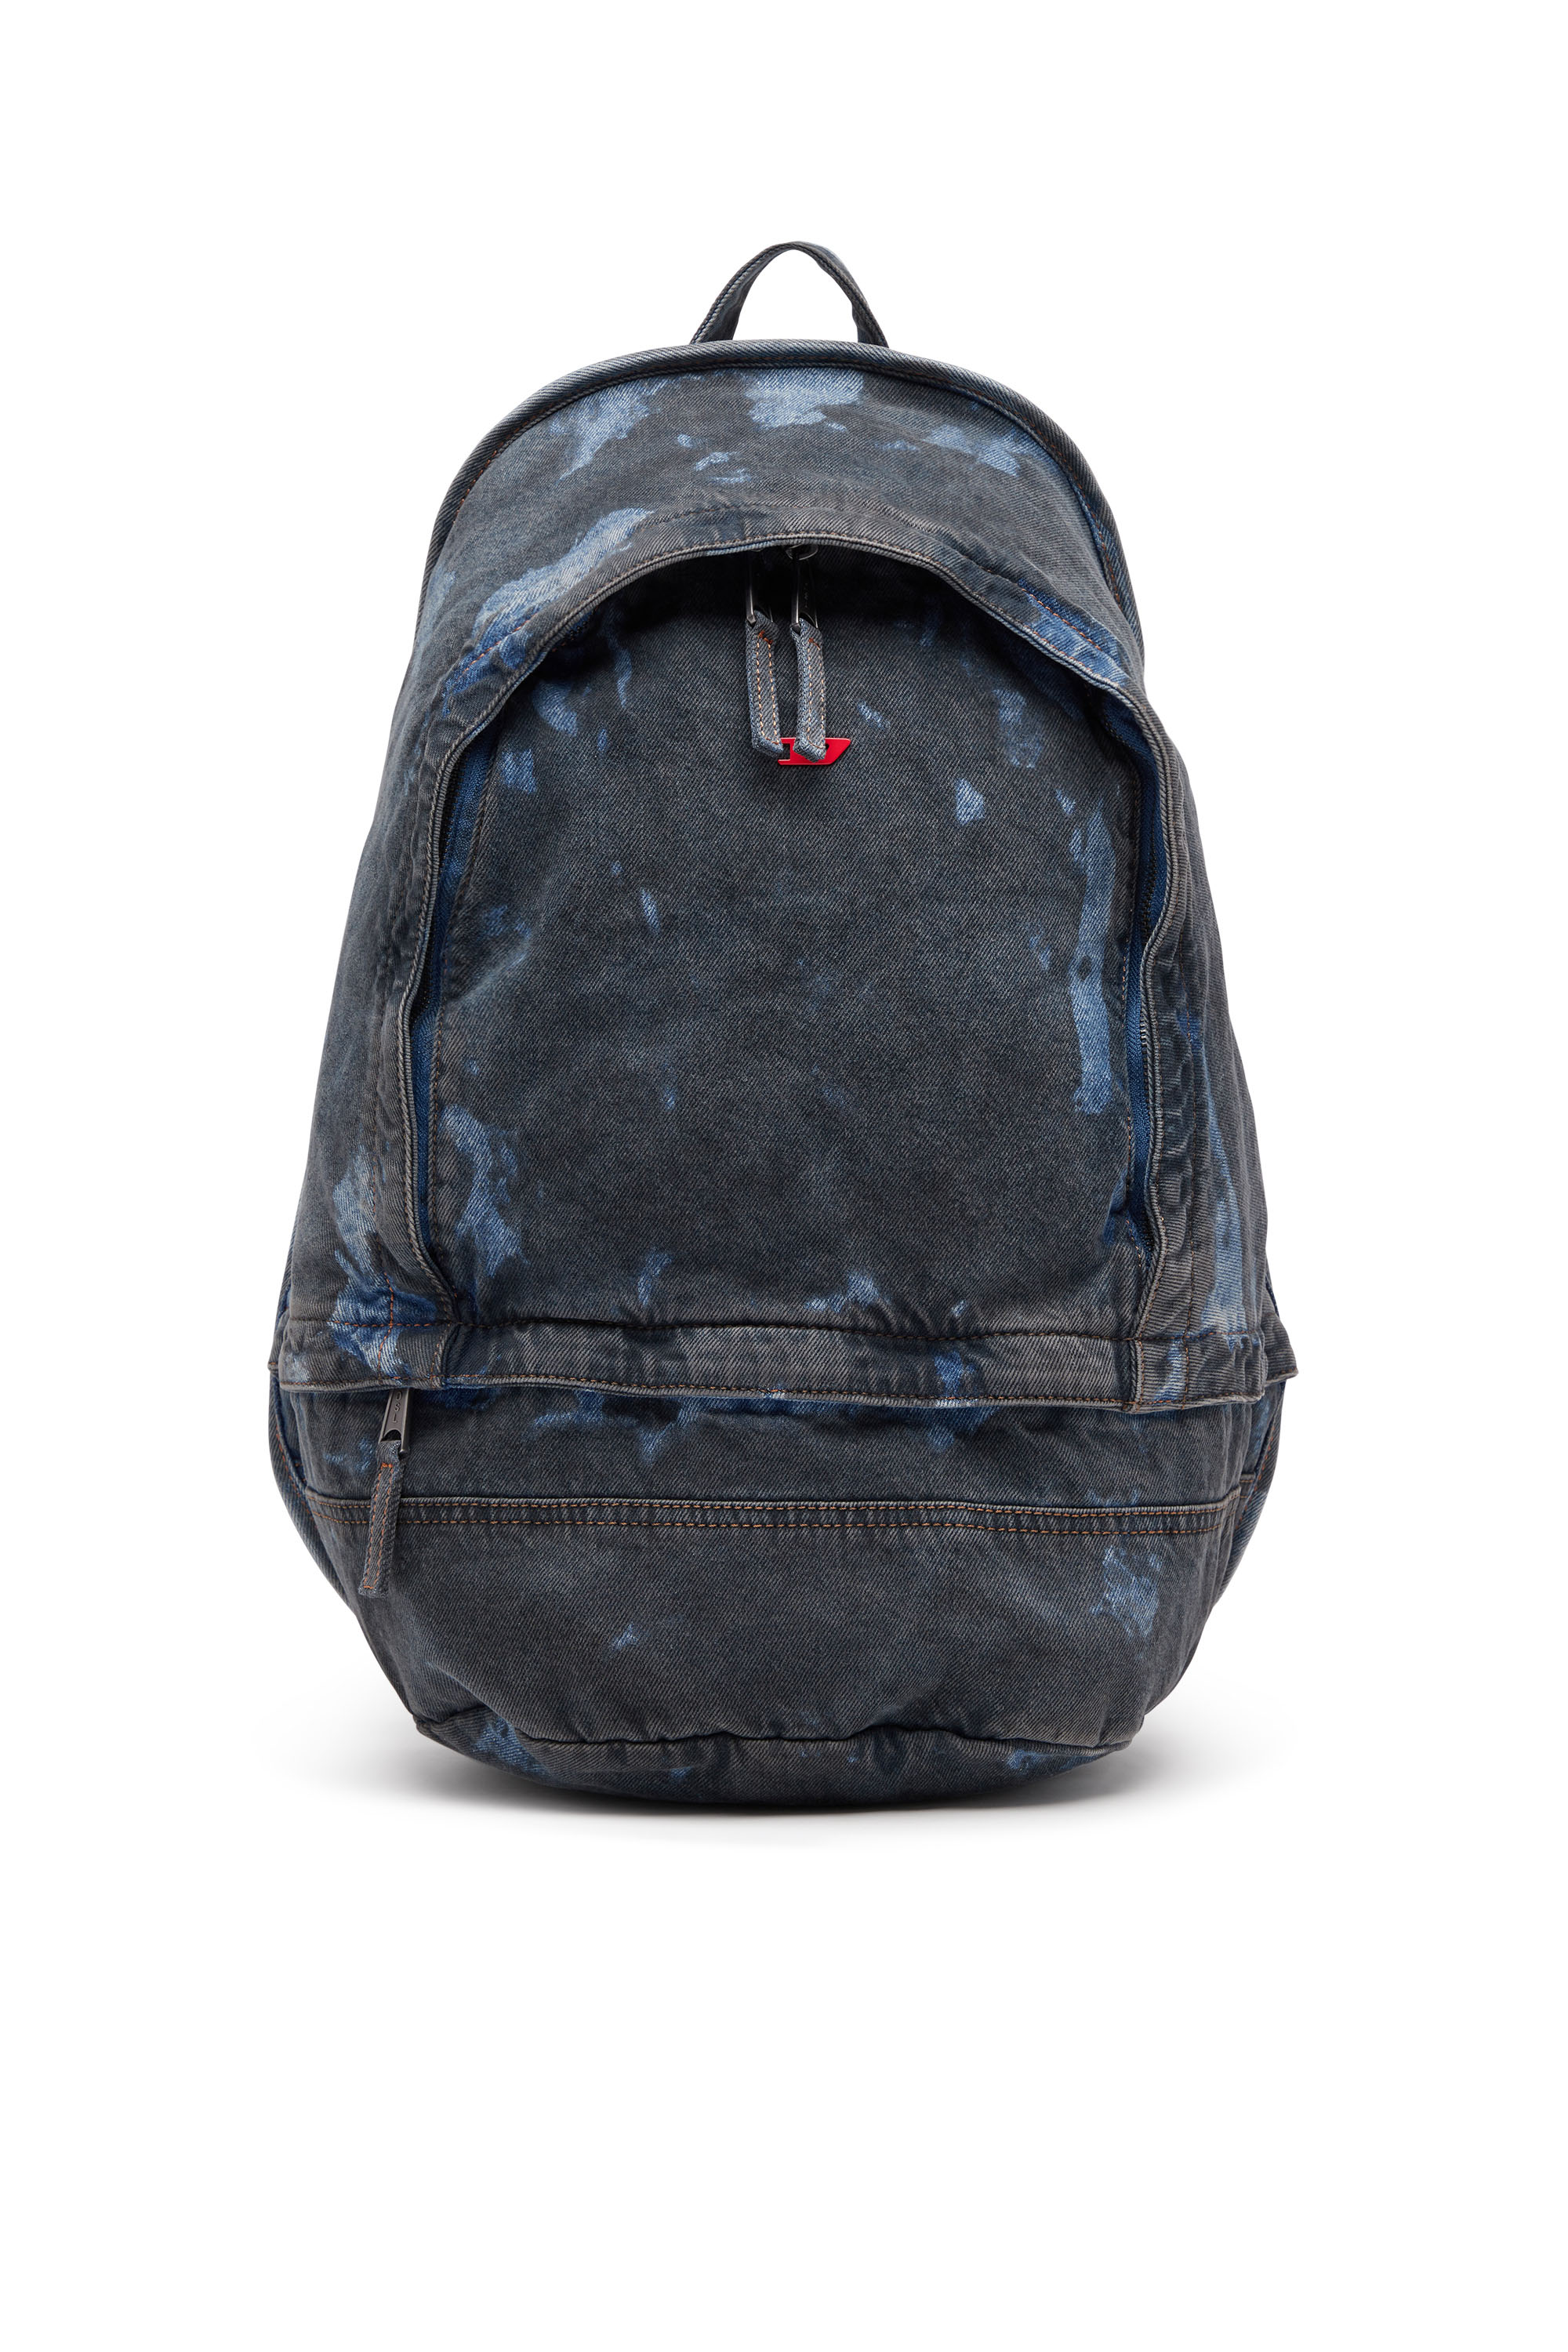 Rave Backpack - Backpack in coated denim